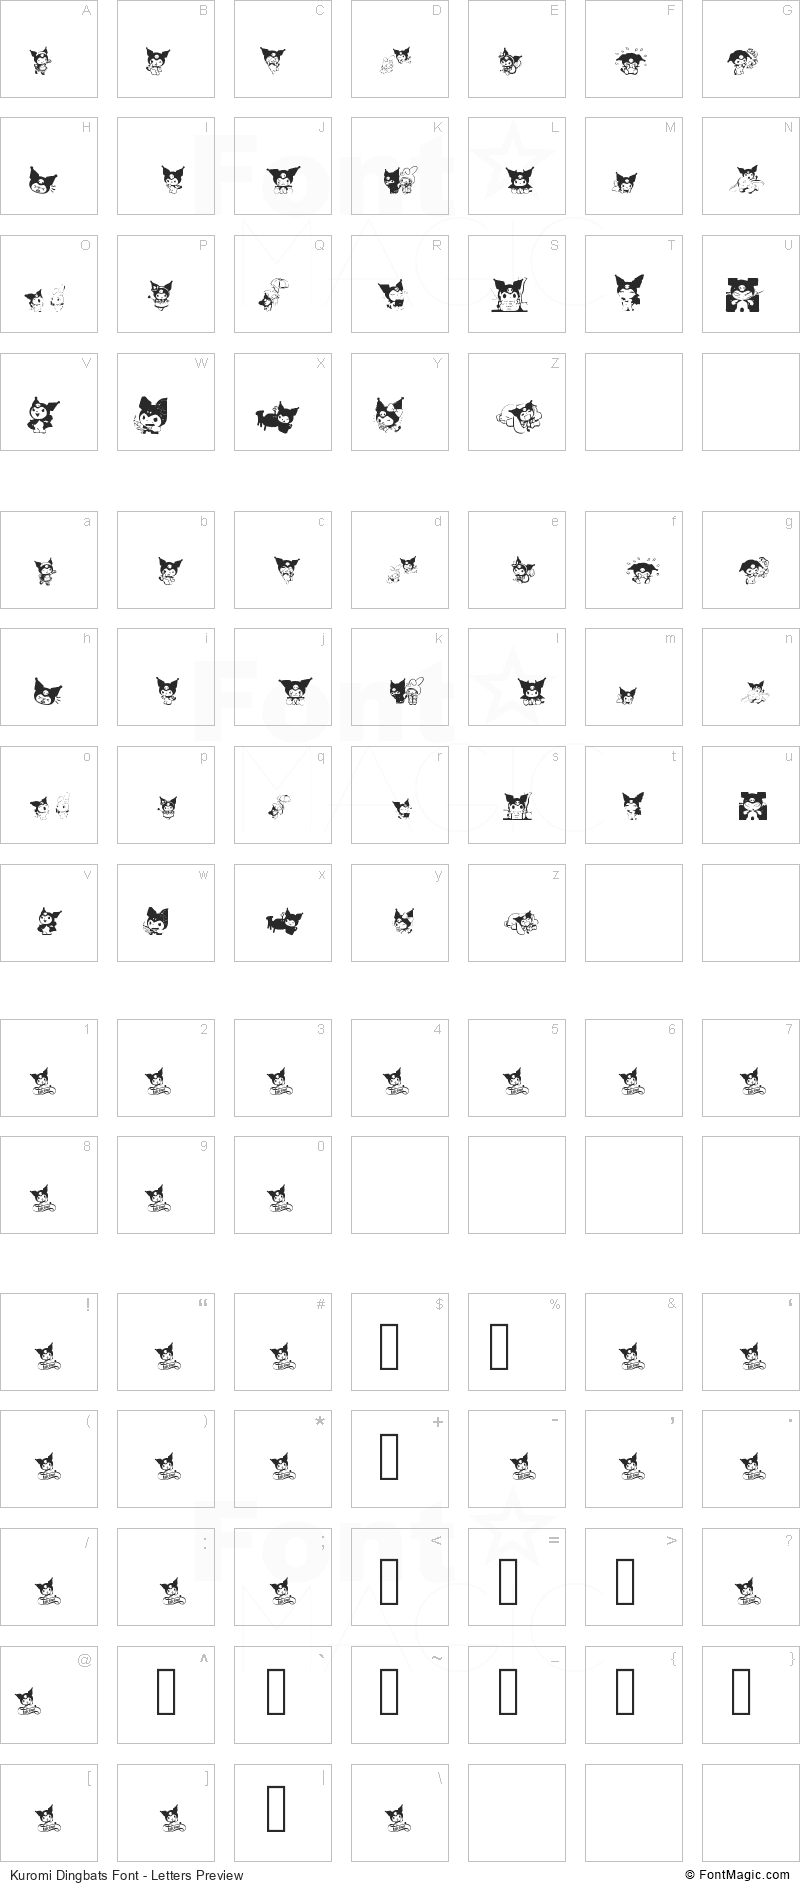 Kuromi Dingbats Font - All Latters Preview Chart